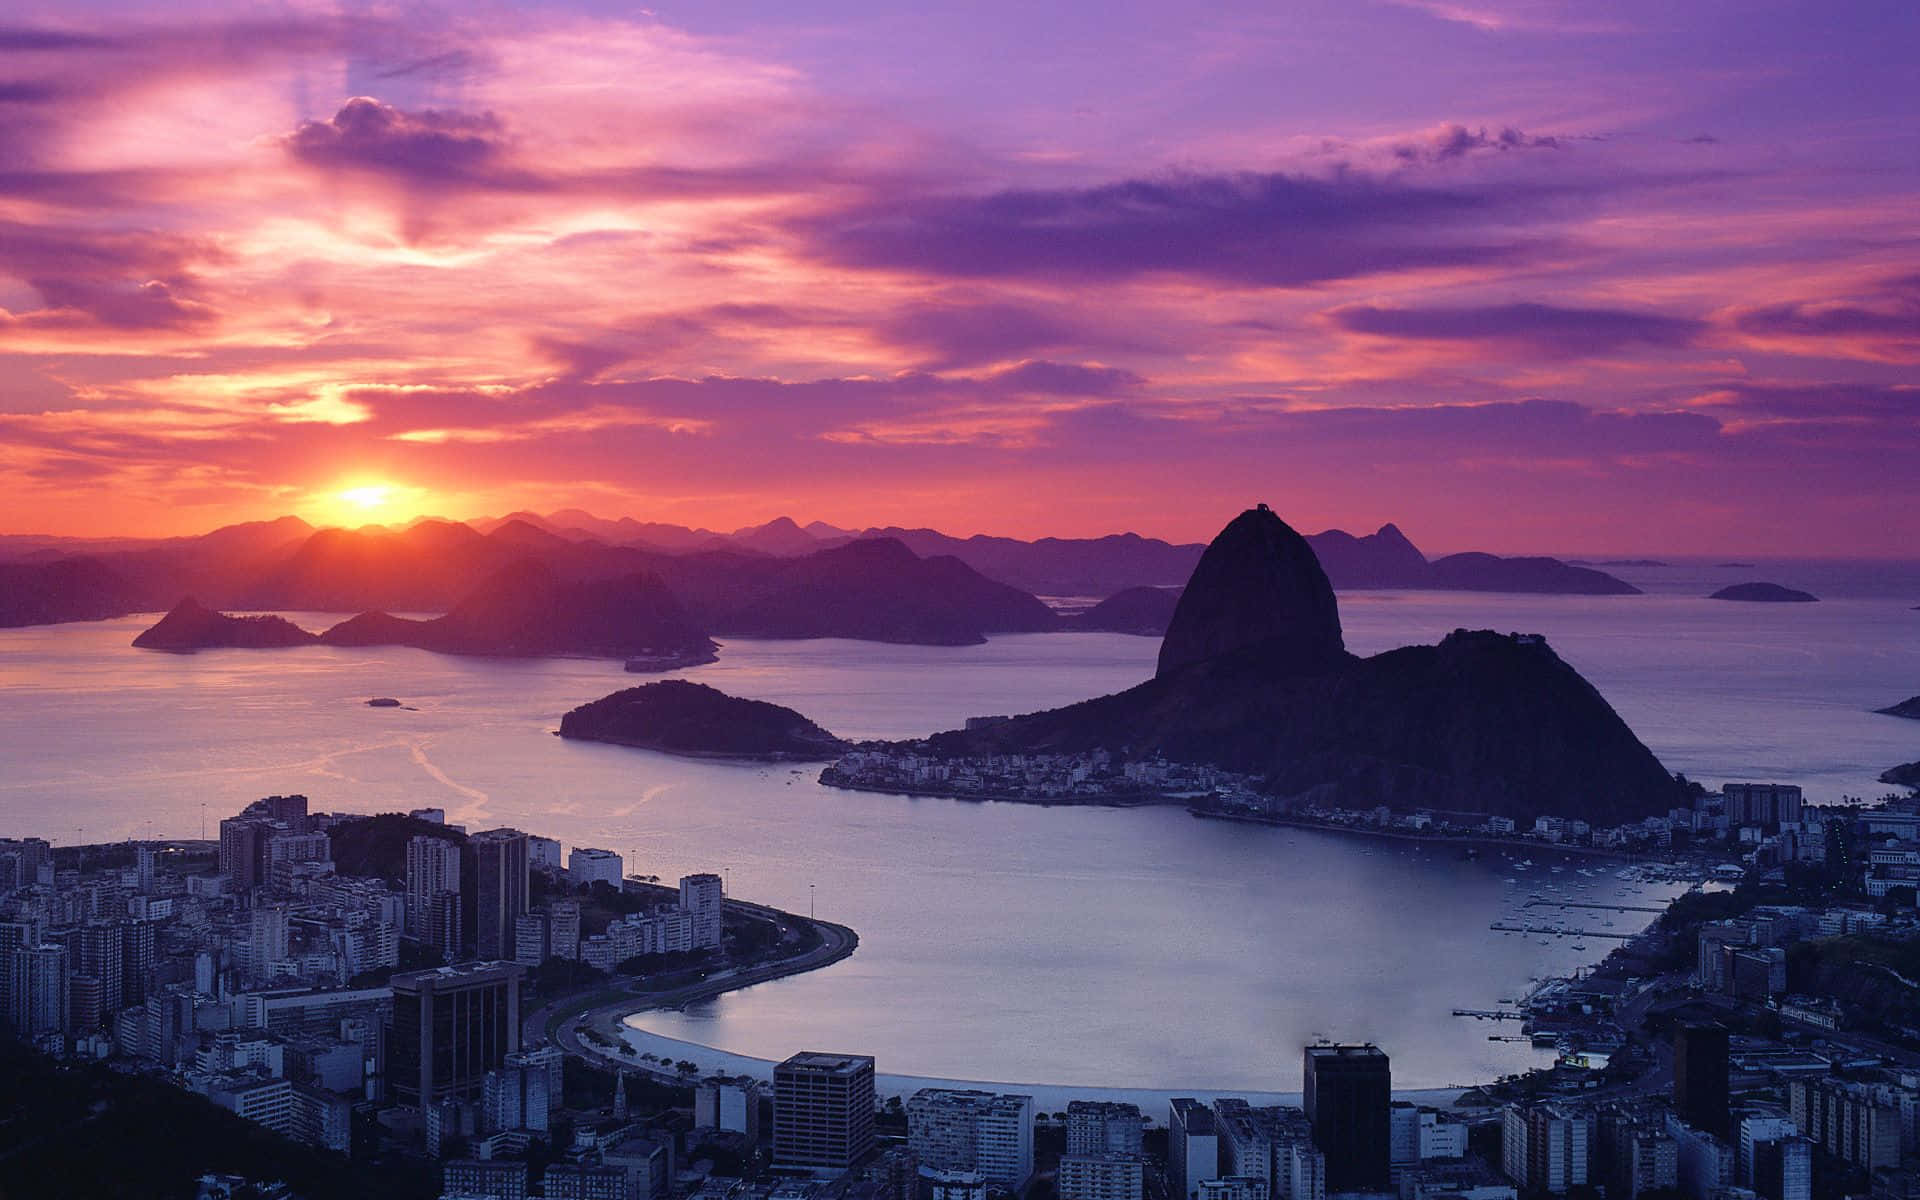 Sunrise at Christ the Redeemer, Rio de Janeiro, Brazil